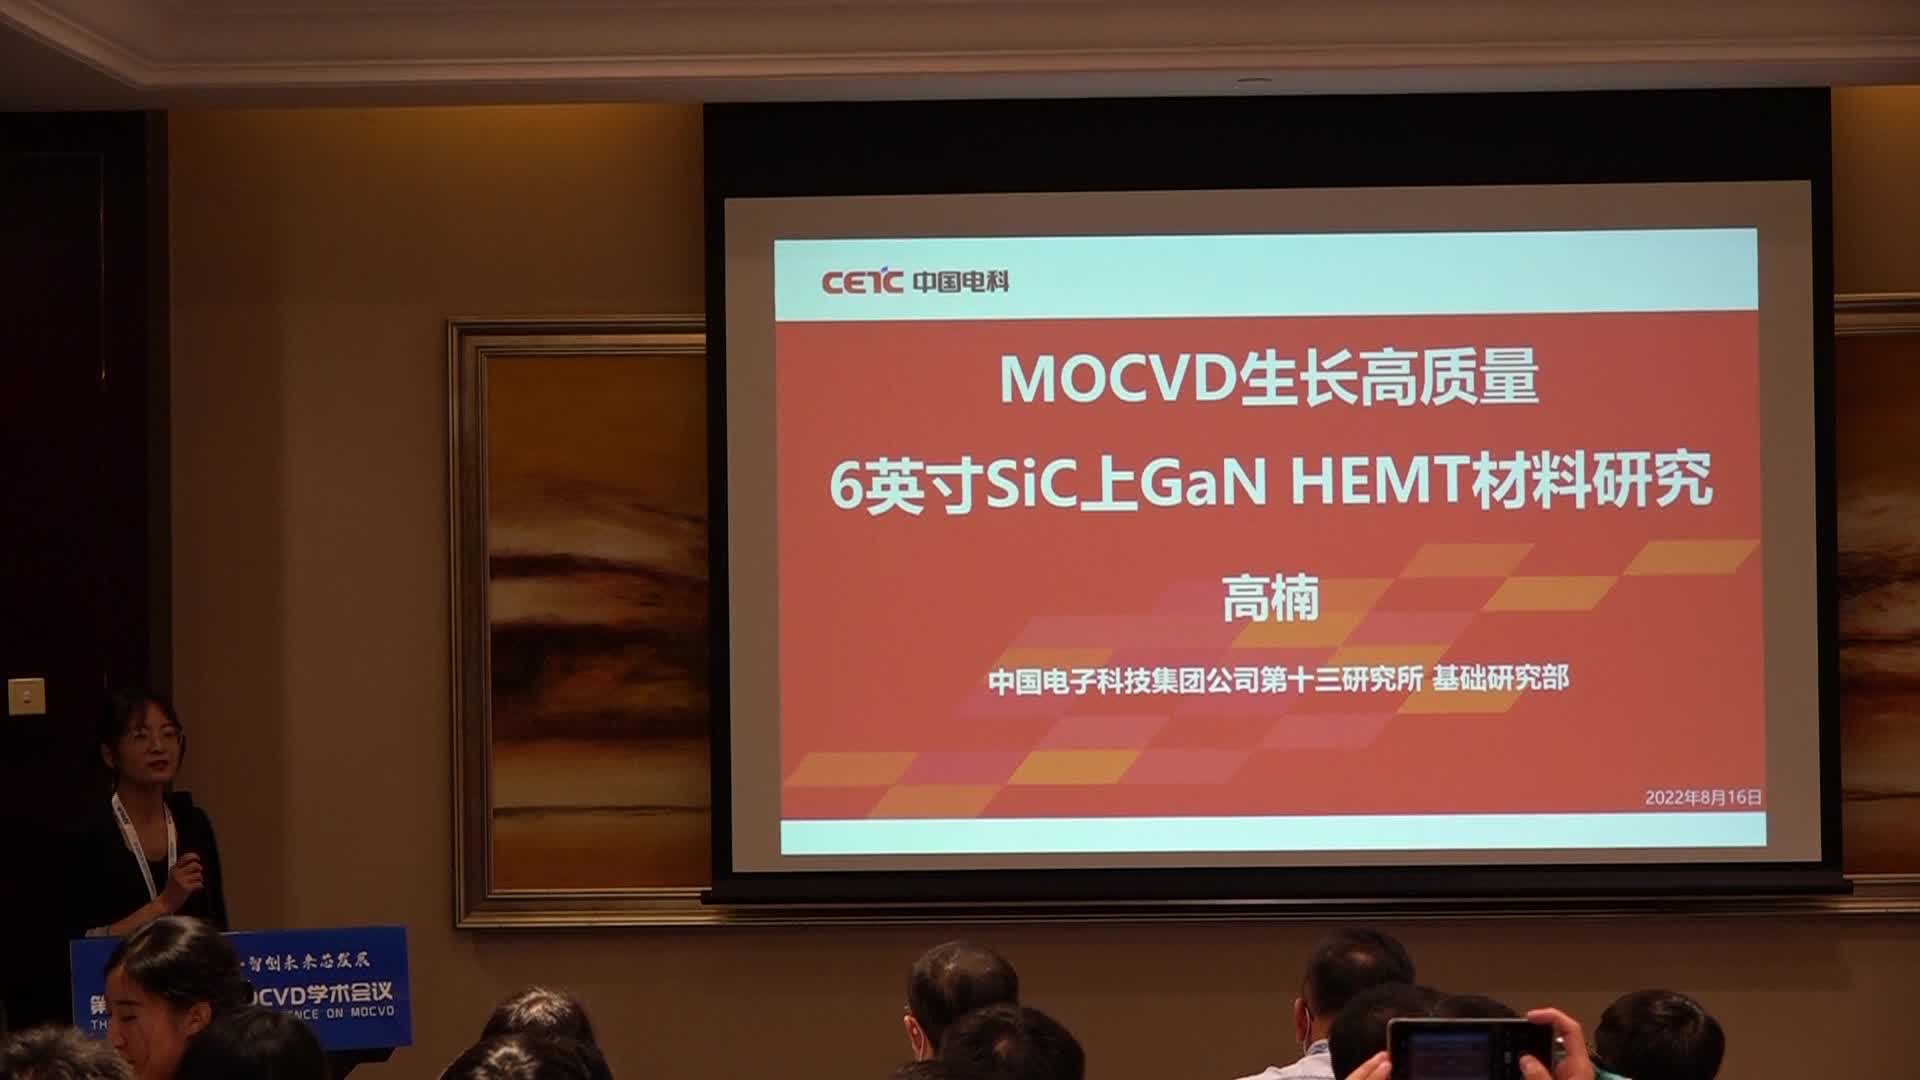 中电科13所高楠：MOCVD生长高质量6英寸SiC上GaN HEMT材料